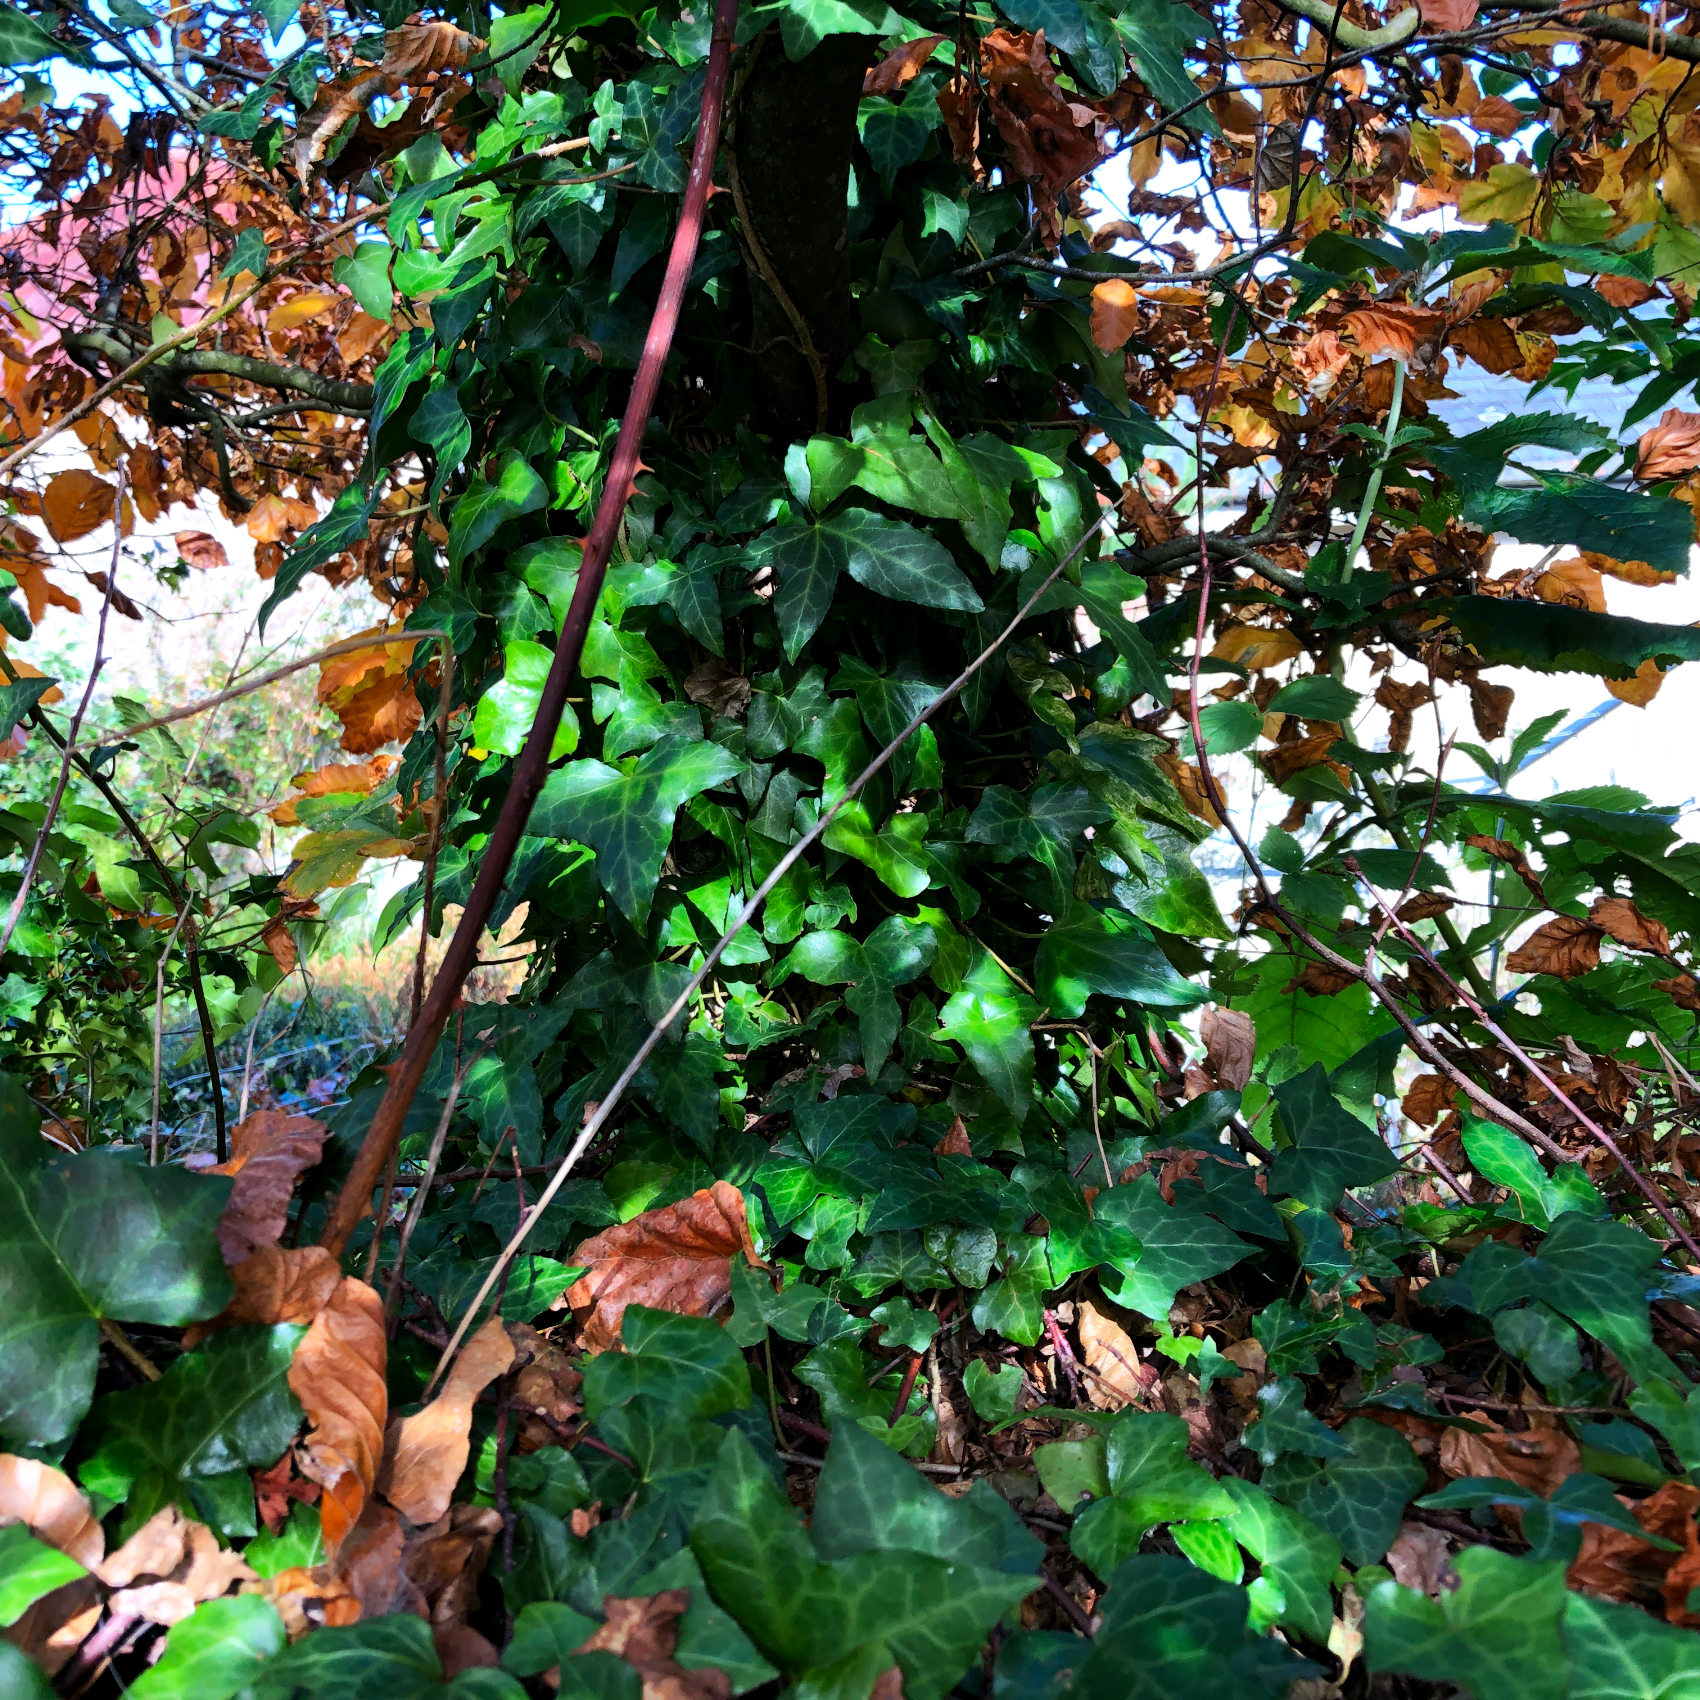 Invasive ivy